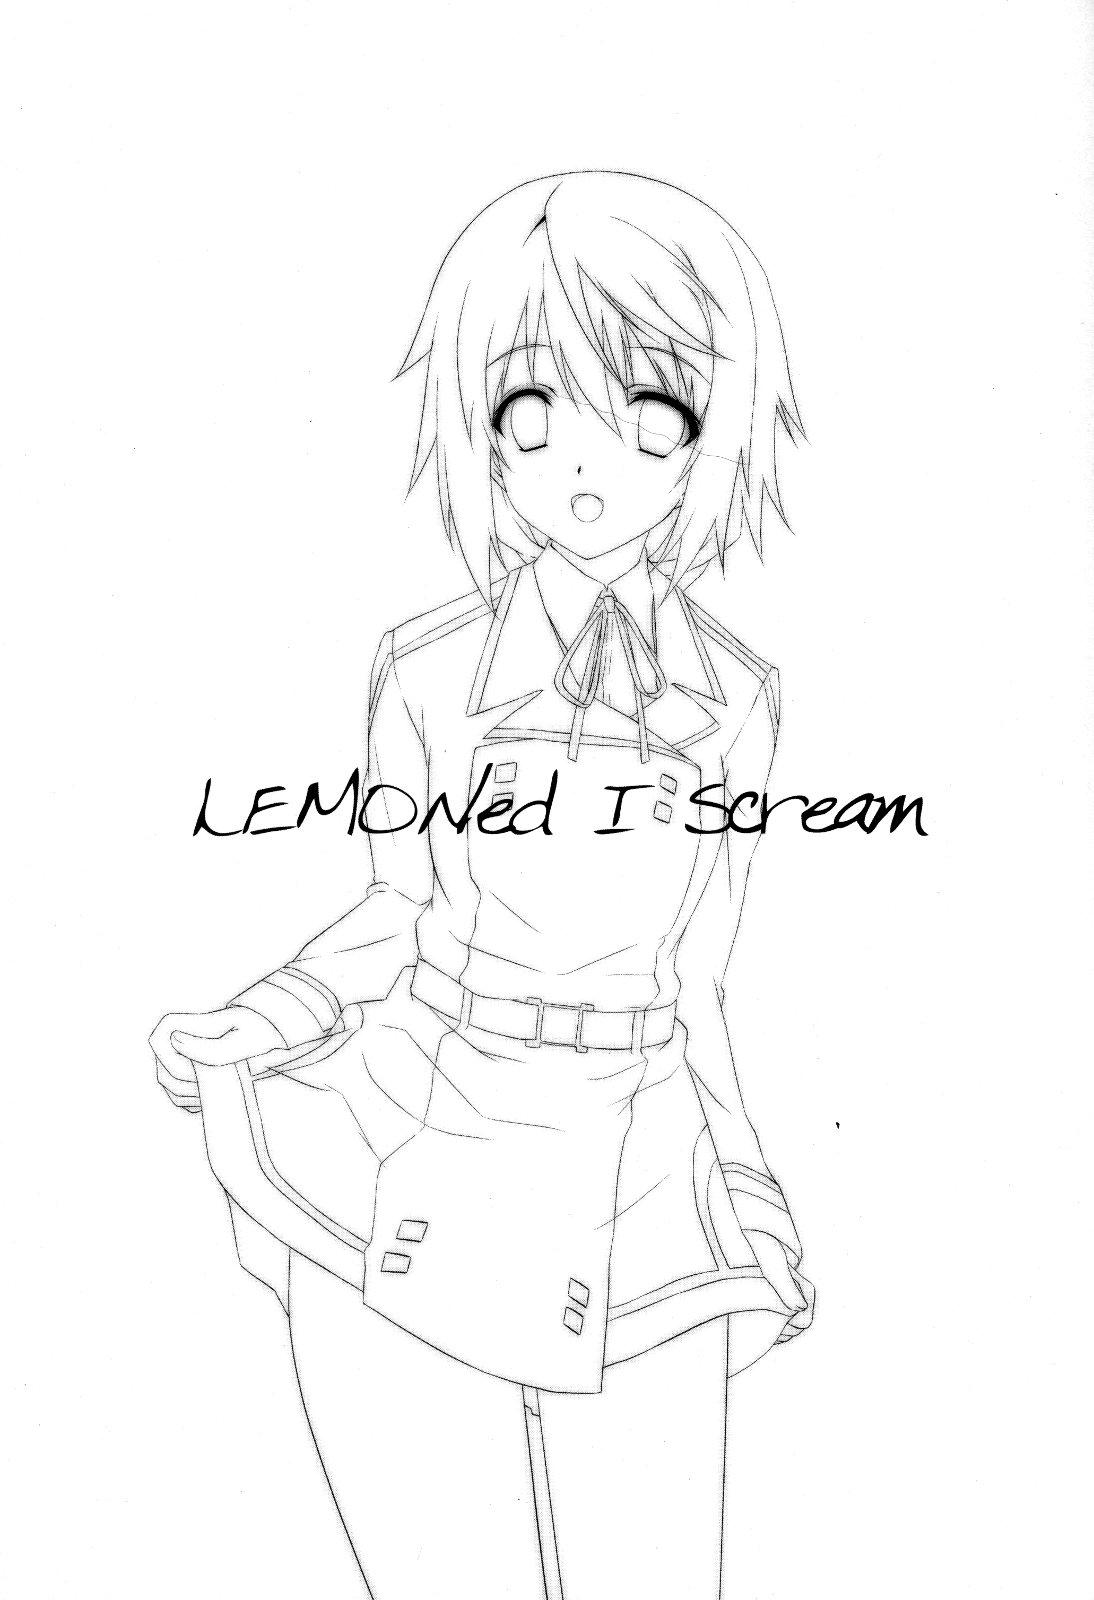 Lemoned IScream 1